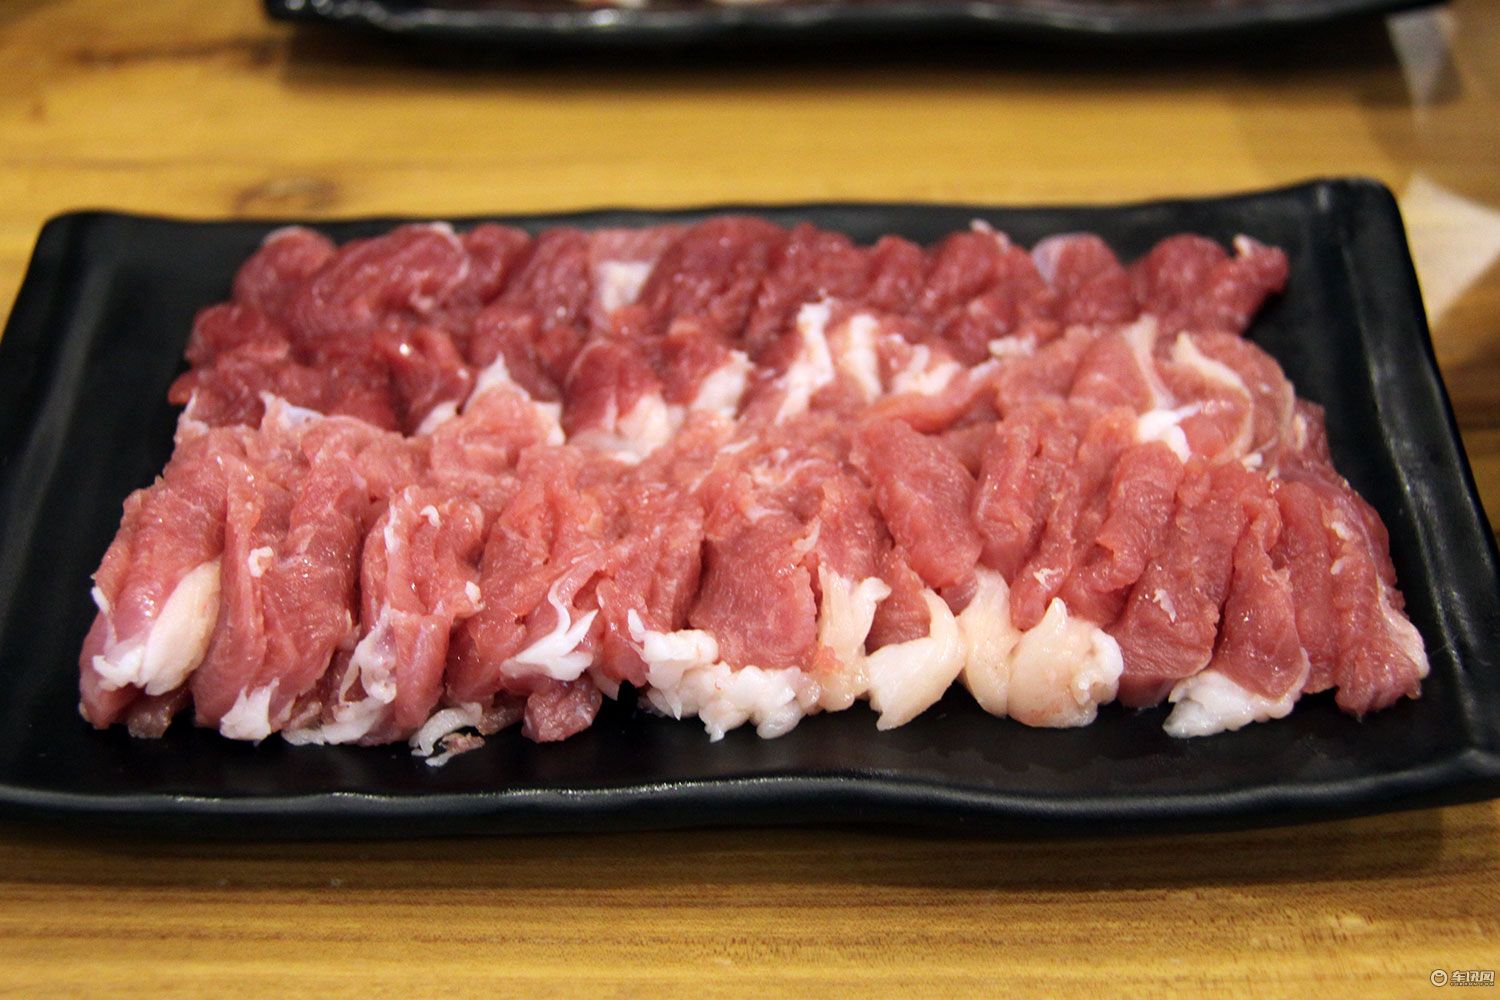 羊磨裆羊上脑爆肚金生隆的肉品则同样根据老北京传统按照不同部位进行